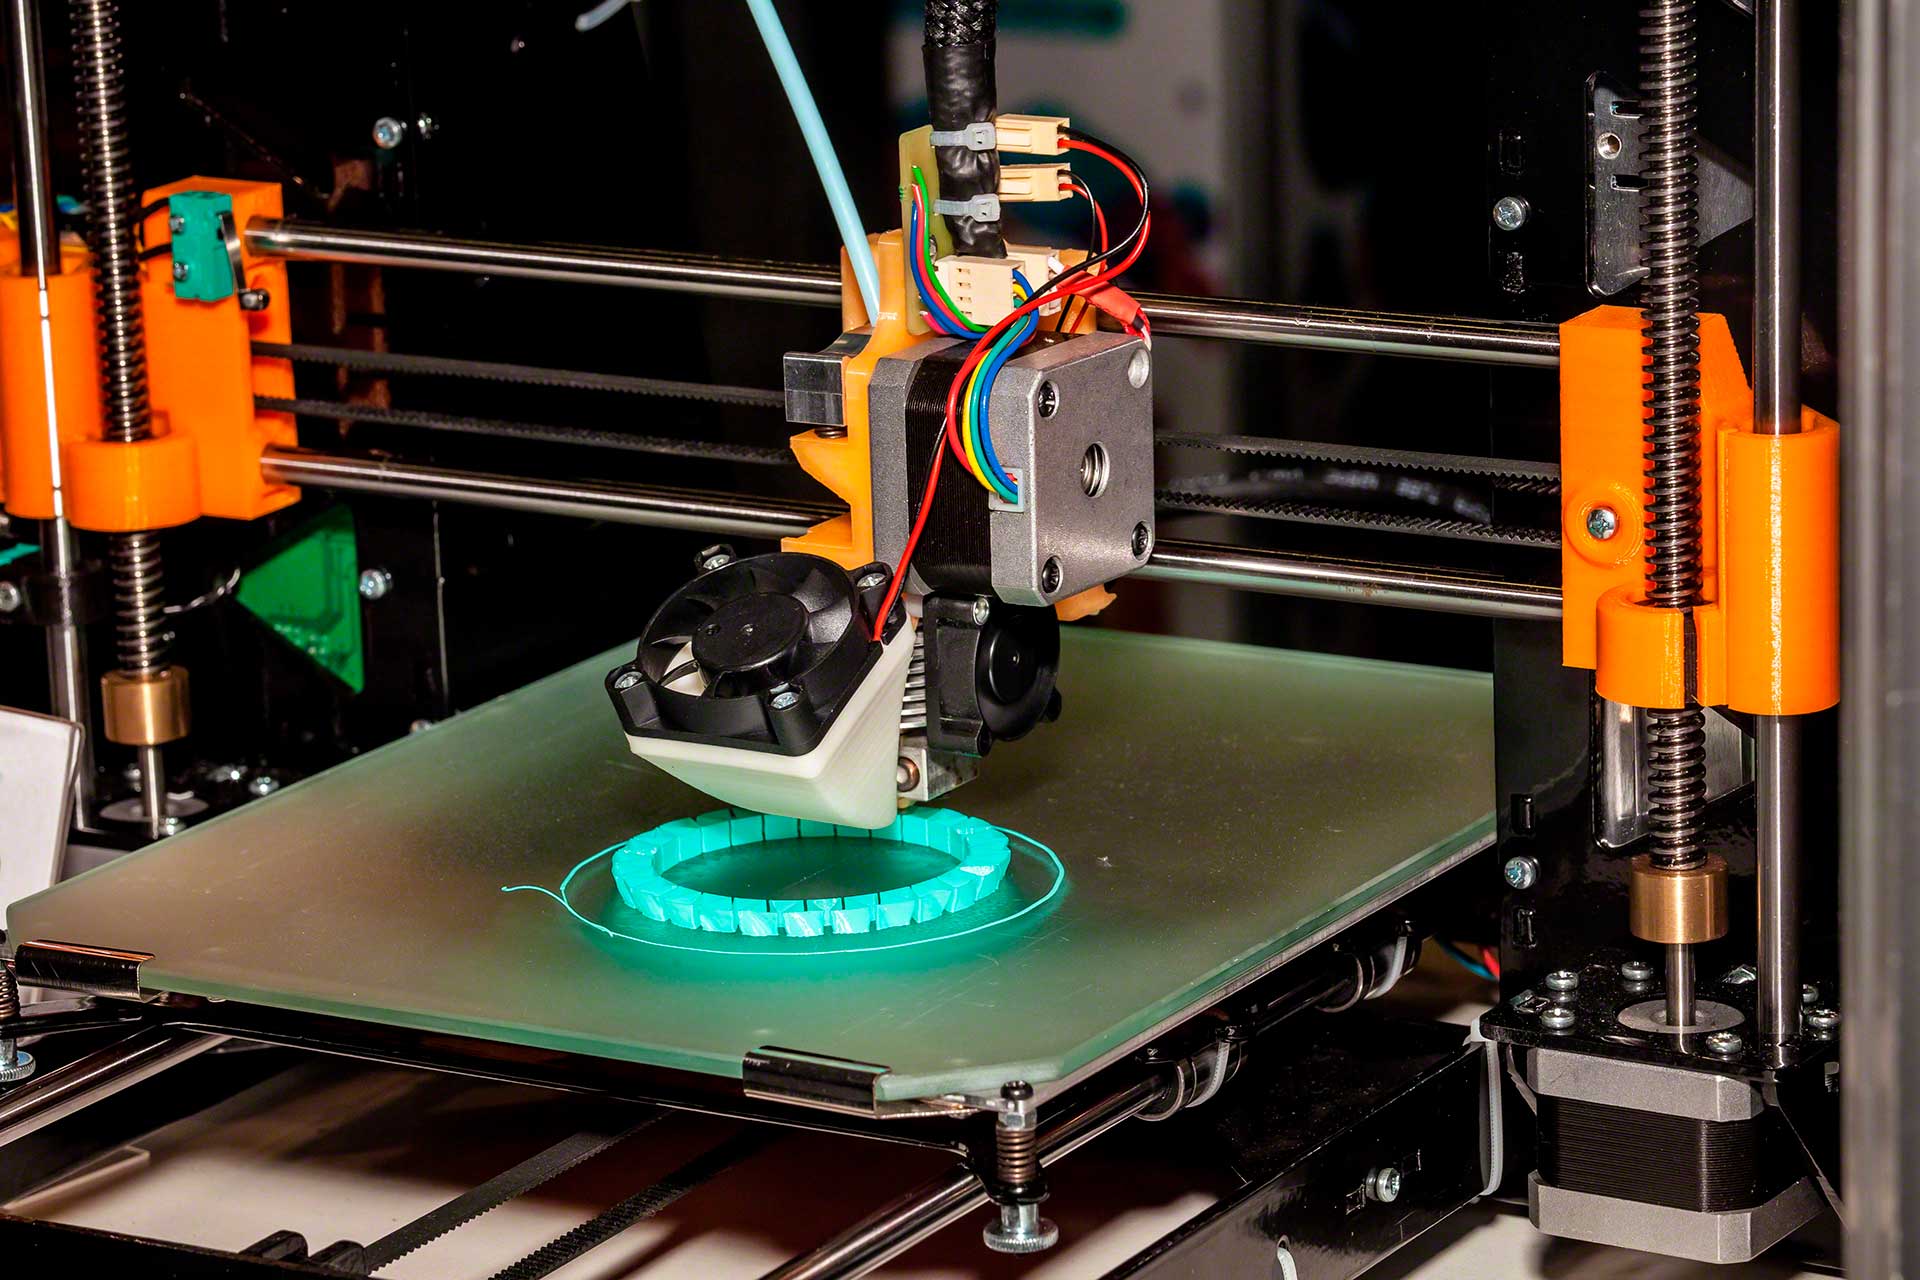 La stampante 3D è una tecnologia rivoluzionaria per la supply chain